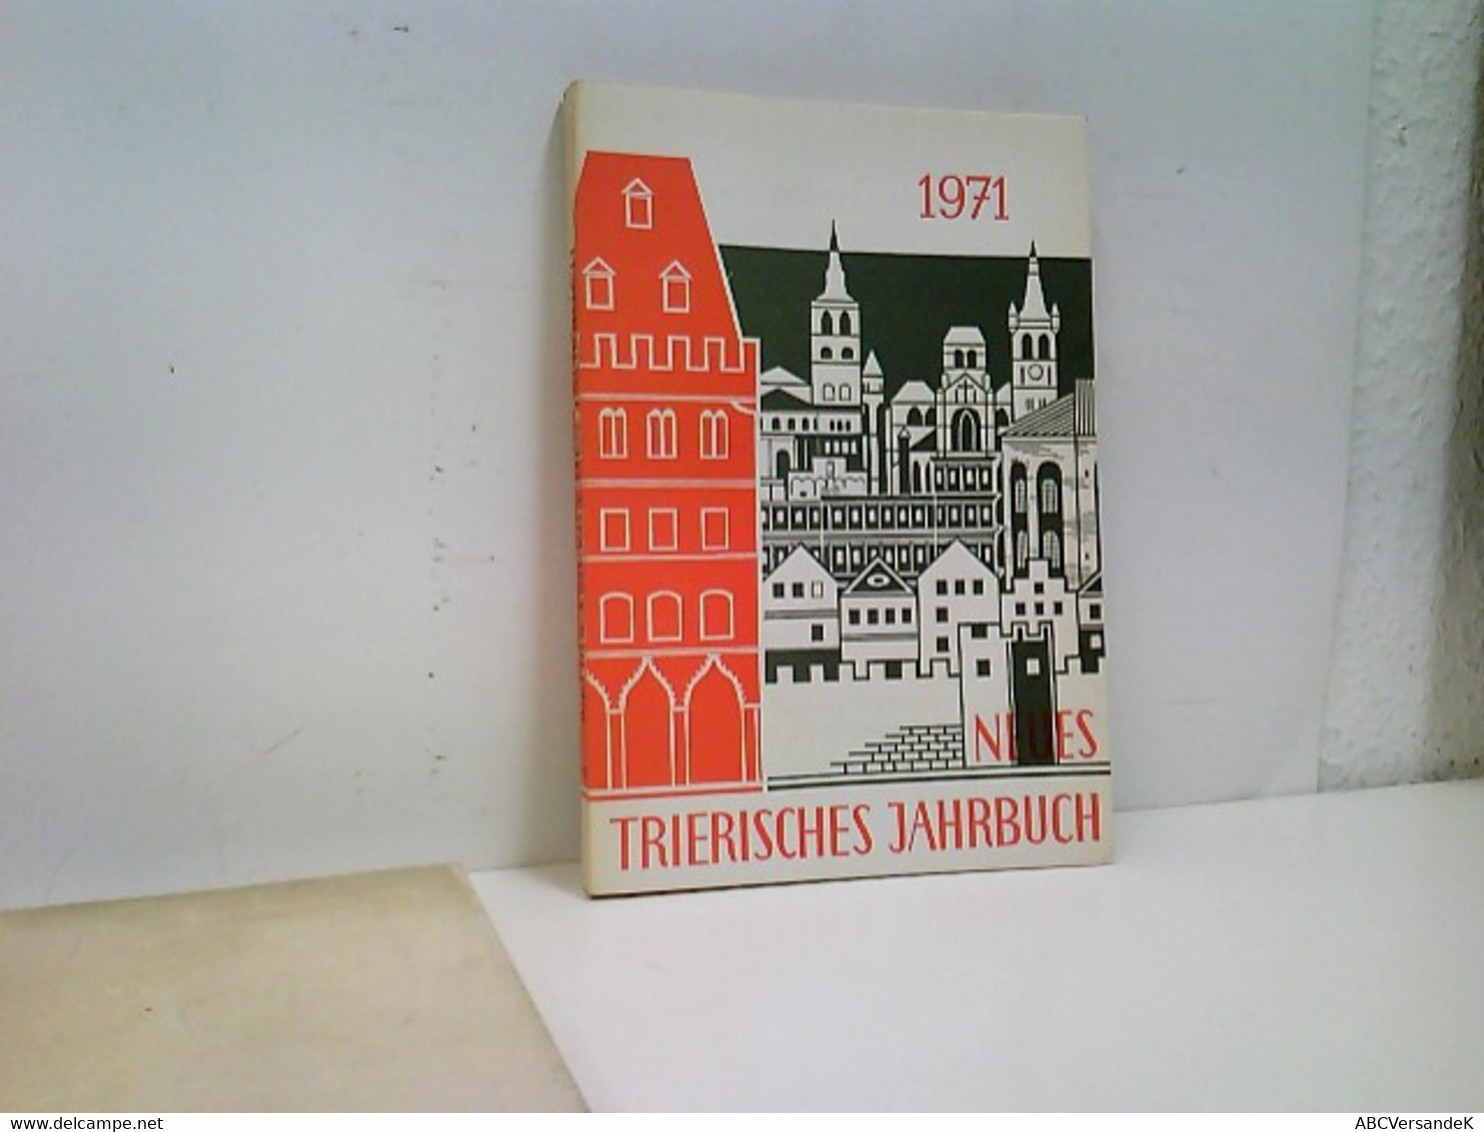 Neues Trierisches Jahrbuch 1971 - Deutschland Gesamt